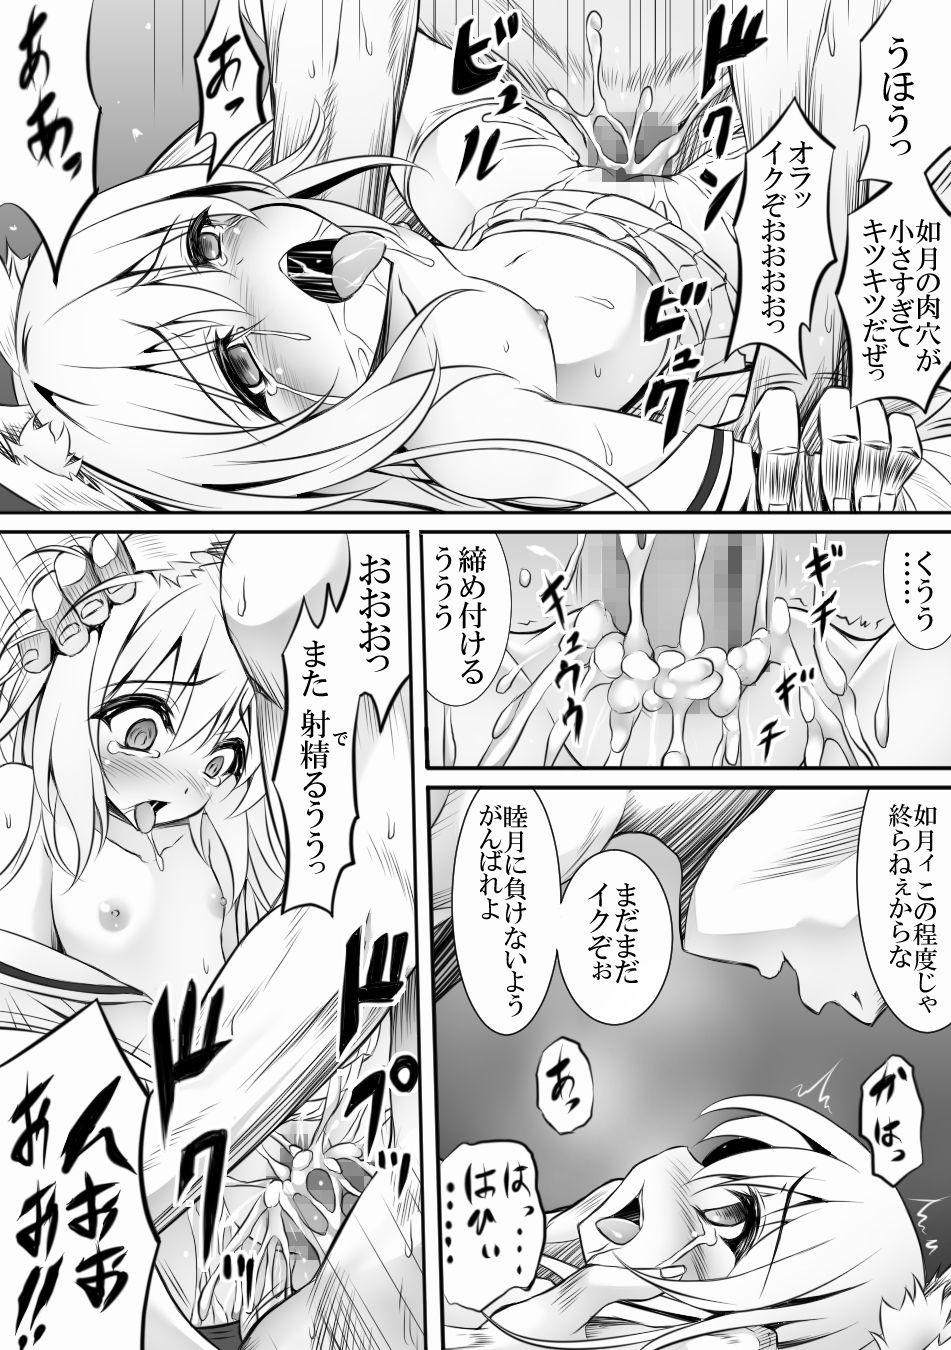 Raw AzuLan 1 Page Manga - Azur lane Perfect Tits - Page 1